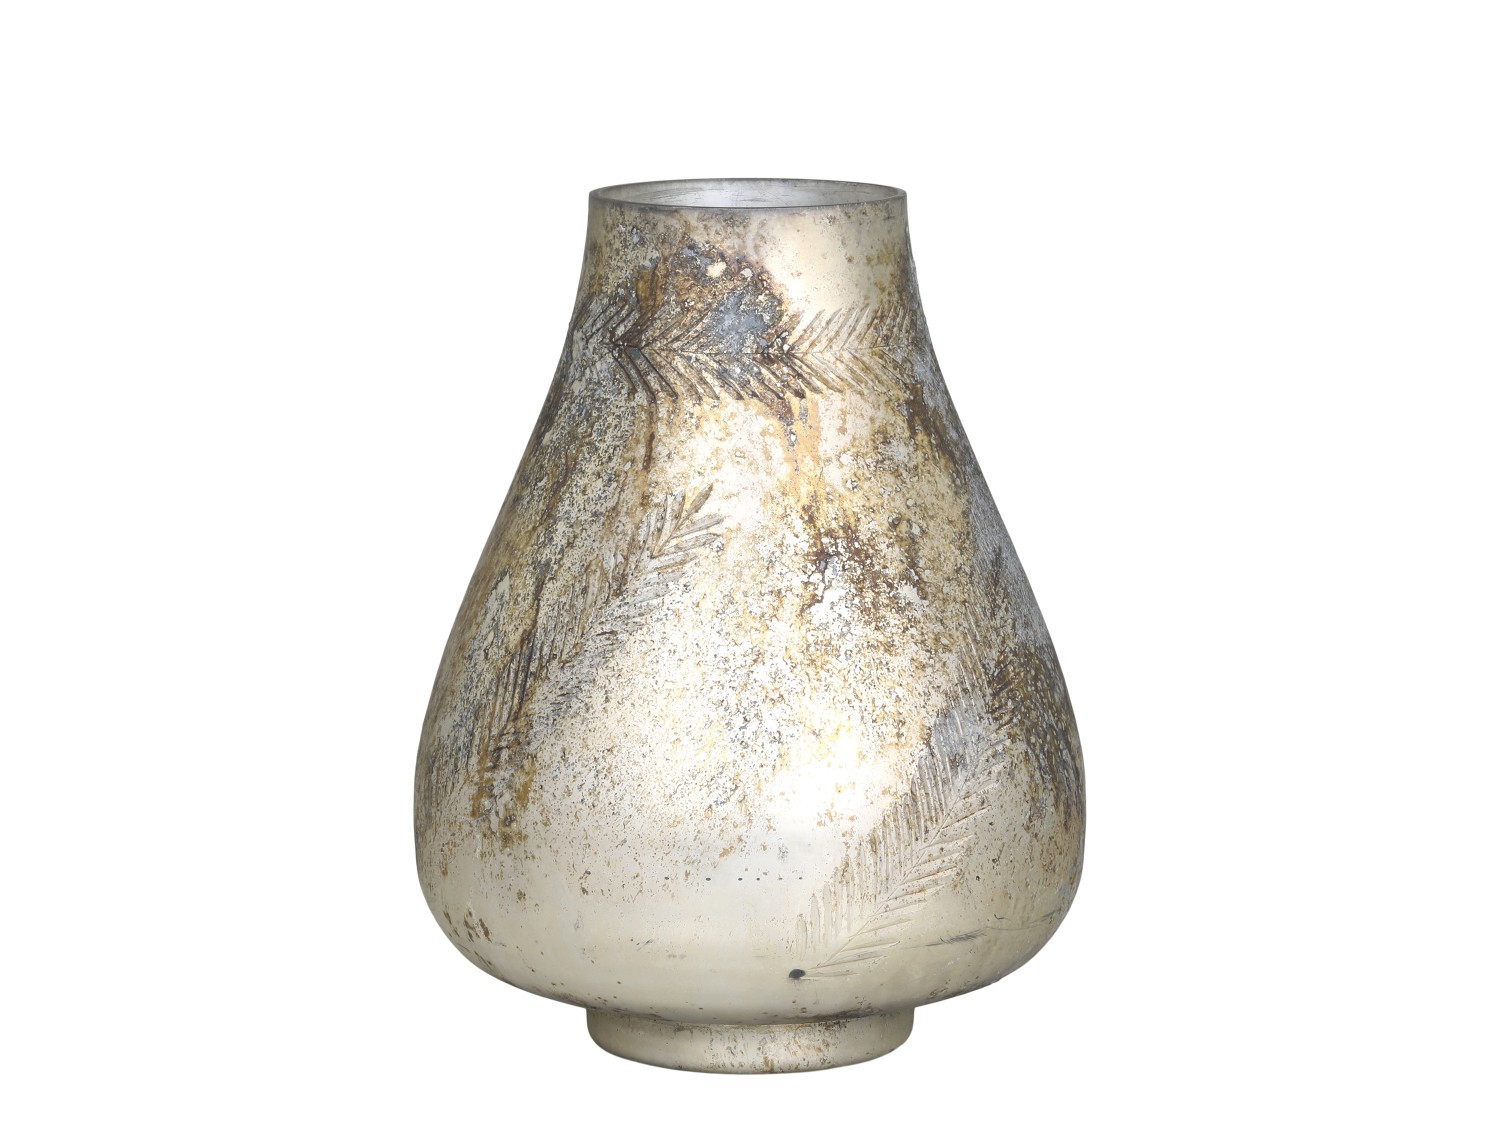 Mocca antik skleněná dekorační váza / svícen Vissia - Ø 20*26 cm Chic Antique